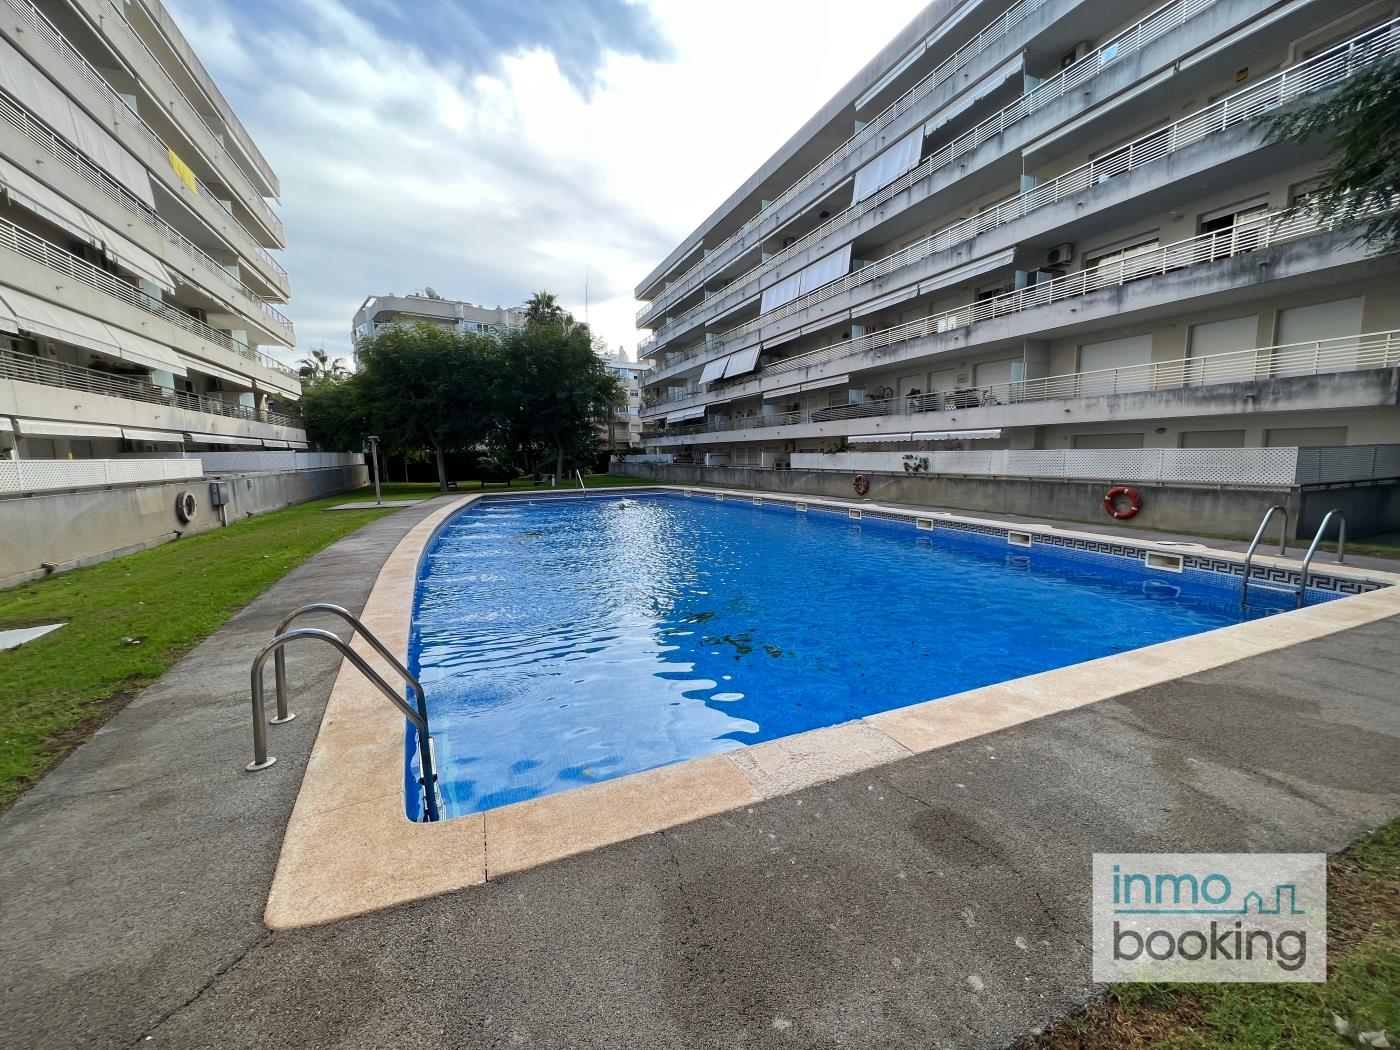 Inmobooking Villa Elvira , amb piscina i aparcament gratuït a salou